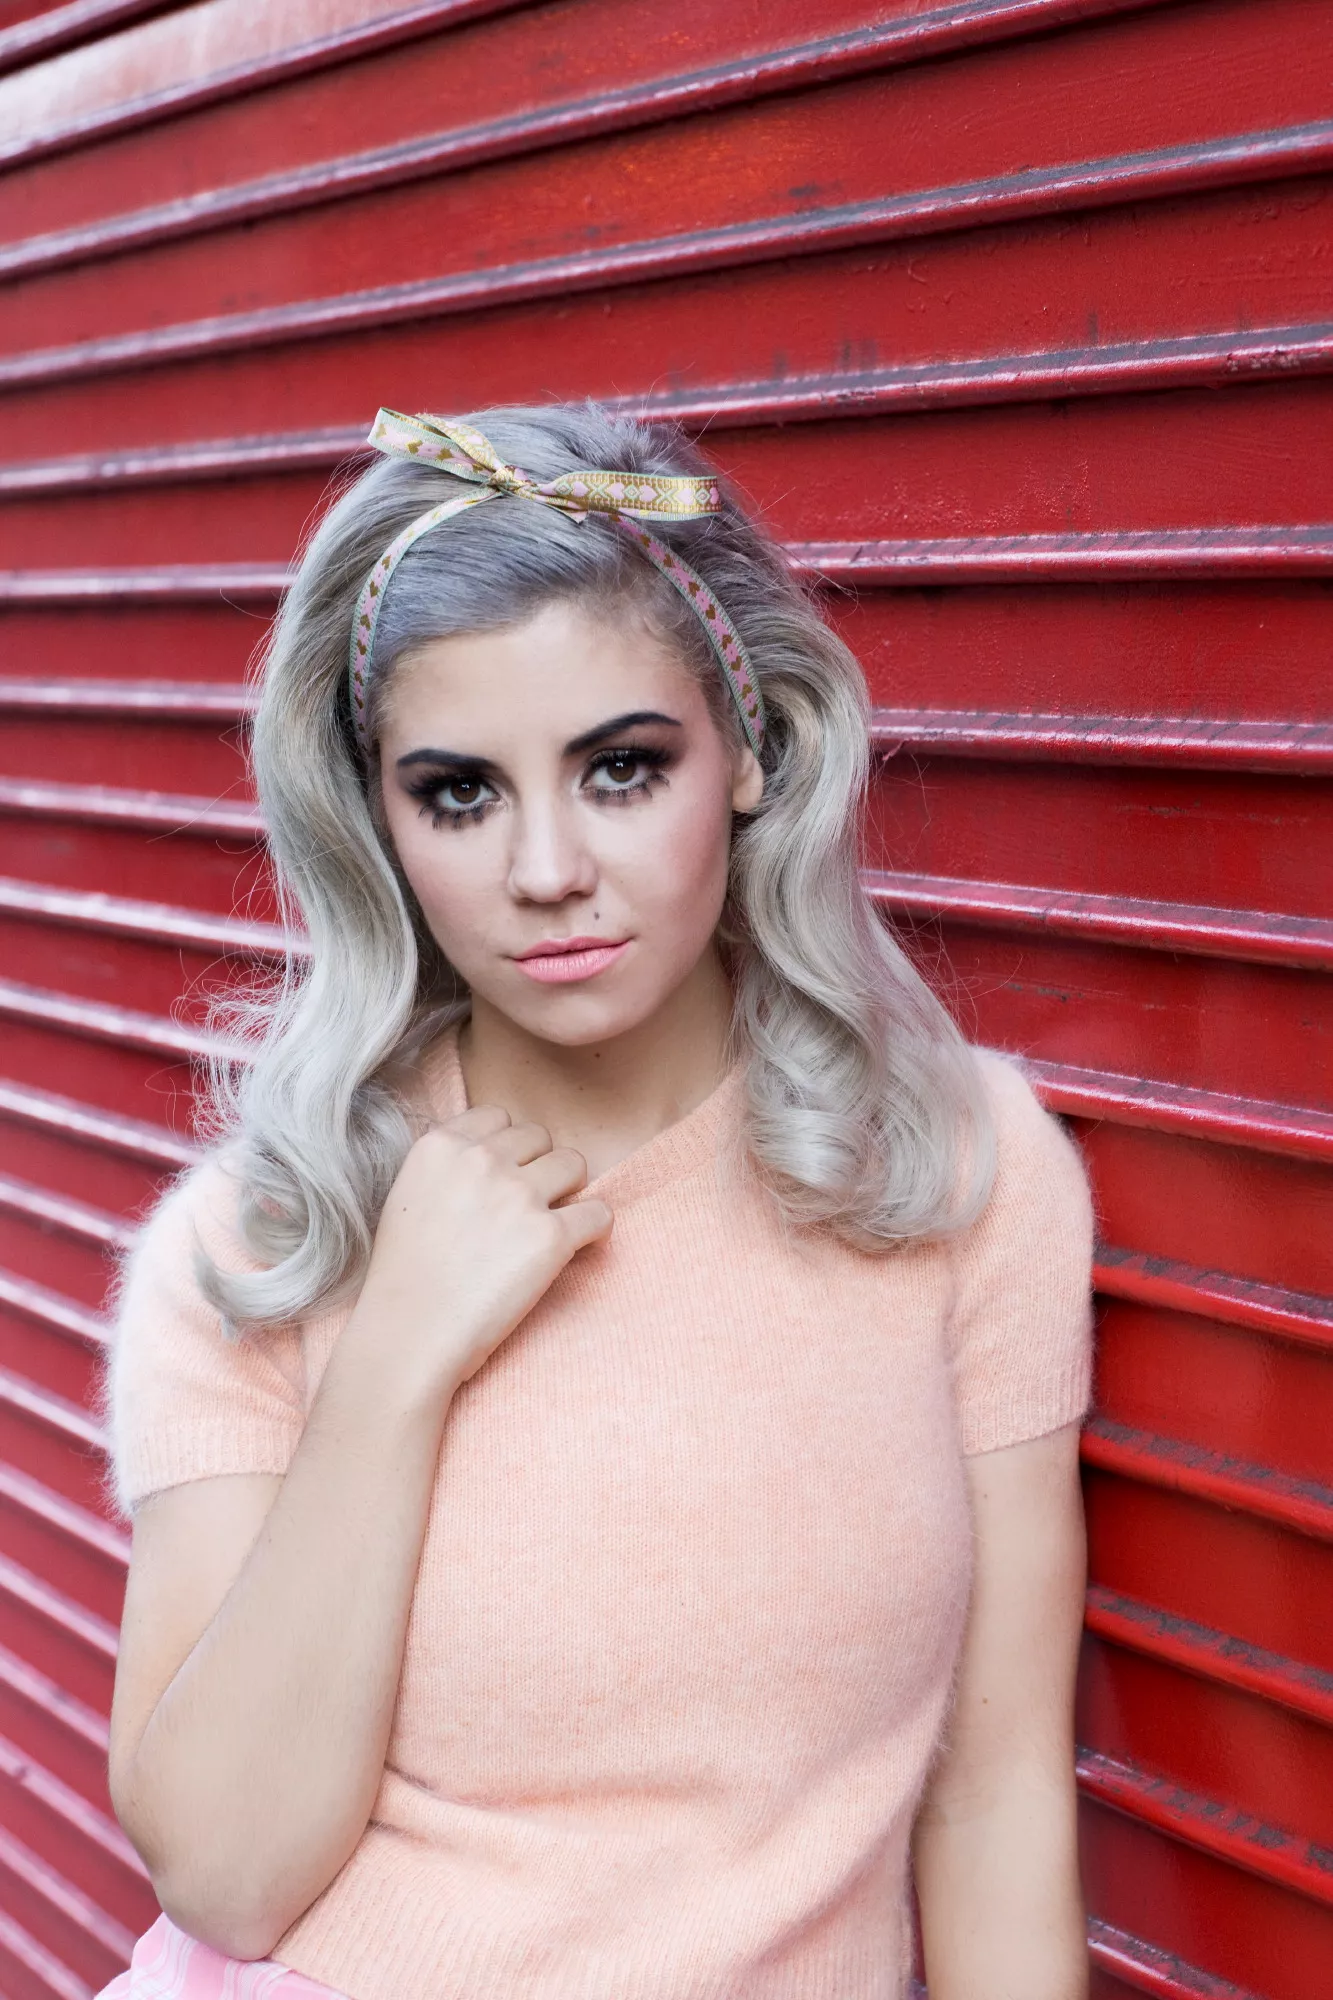 Marina And The Diamonds – Rollespil med et glimt i øjet